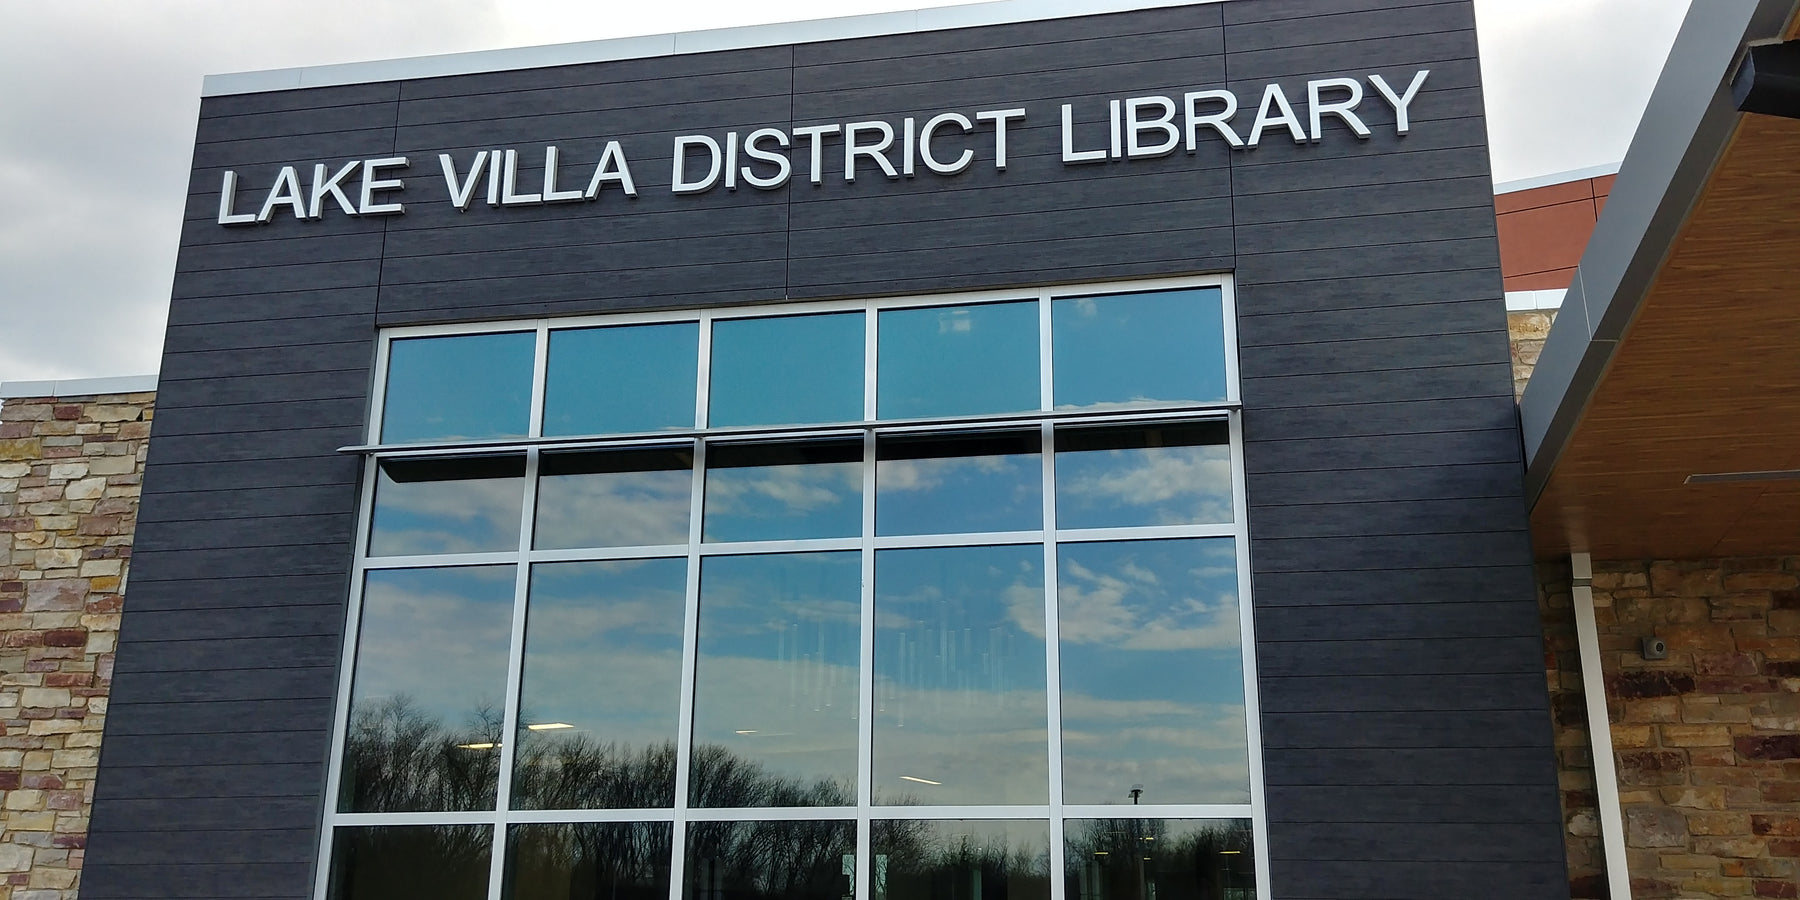 Lake Villa District Library